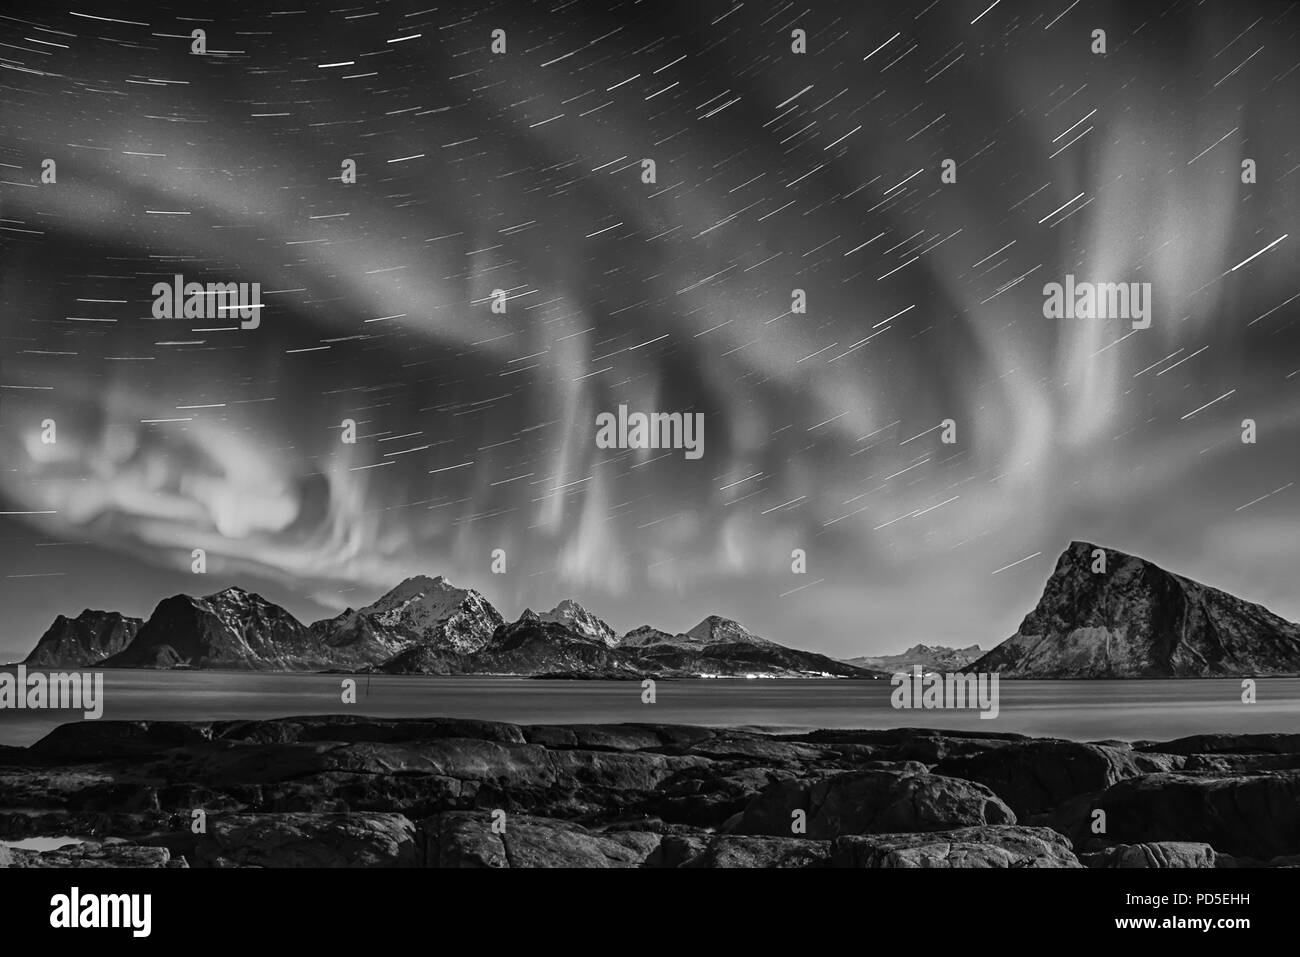 Luci del nord, Aurora Boreale splendente nella notte il cielo stellato con star brani in inverno Isole Lofoten in Norvegia. In bianco e nero. Foto Stock